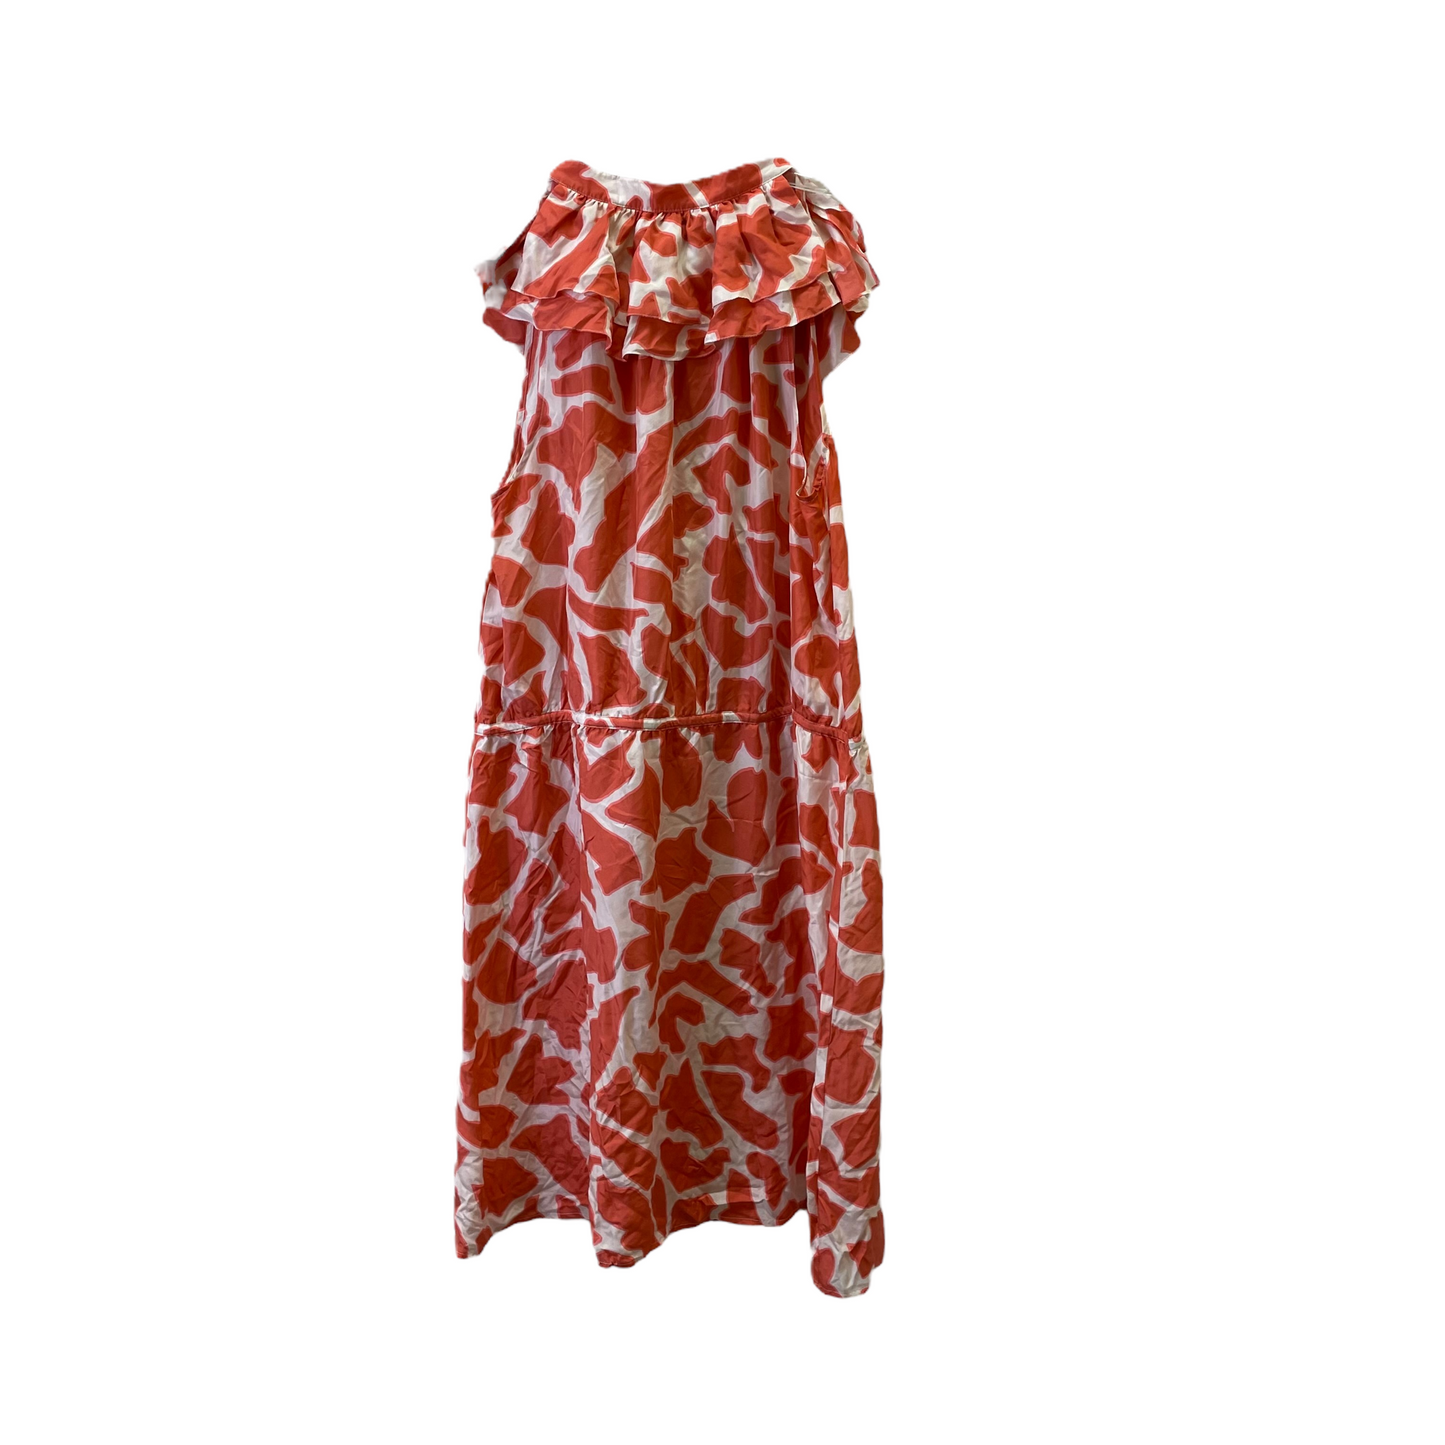 Orange Dress Casual Midi By Loft, Size: 1x